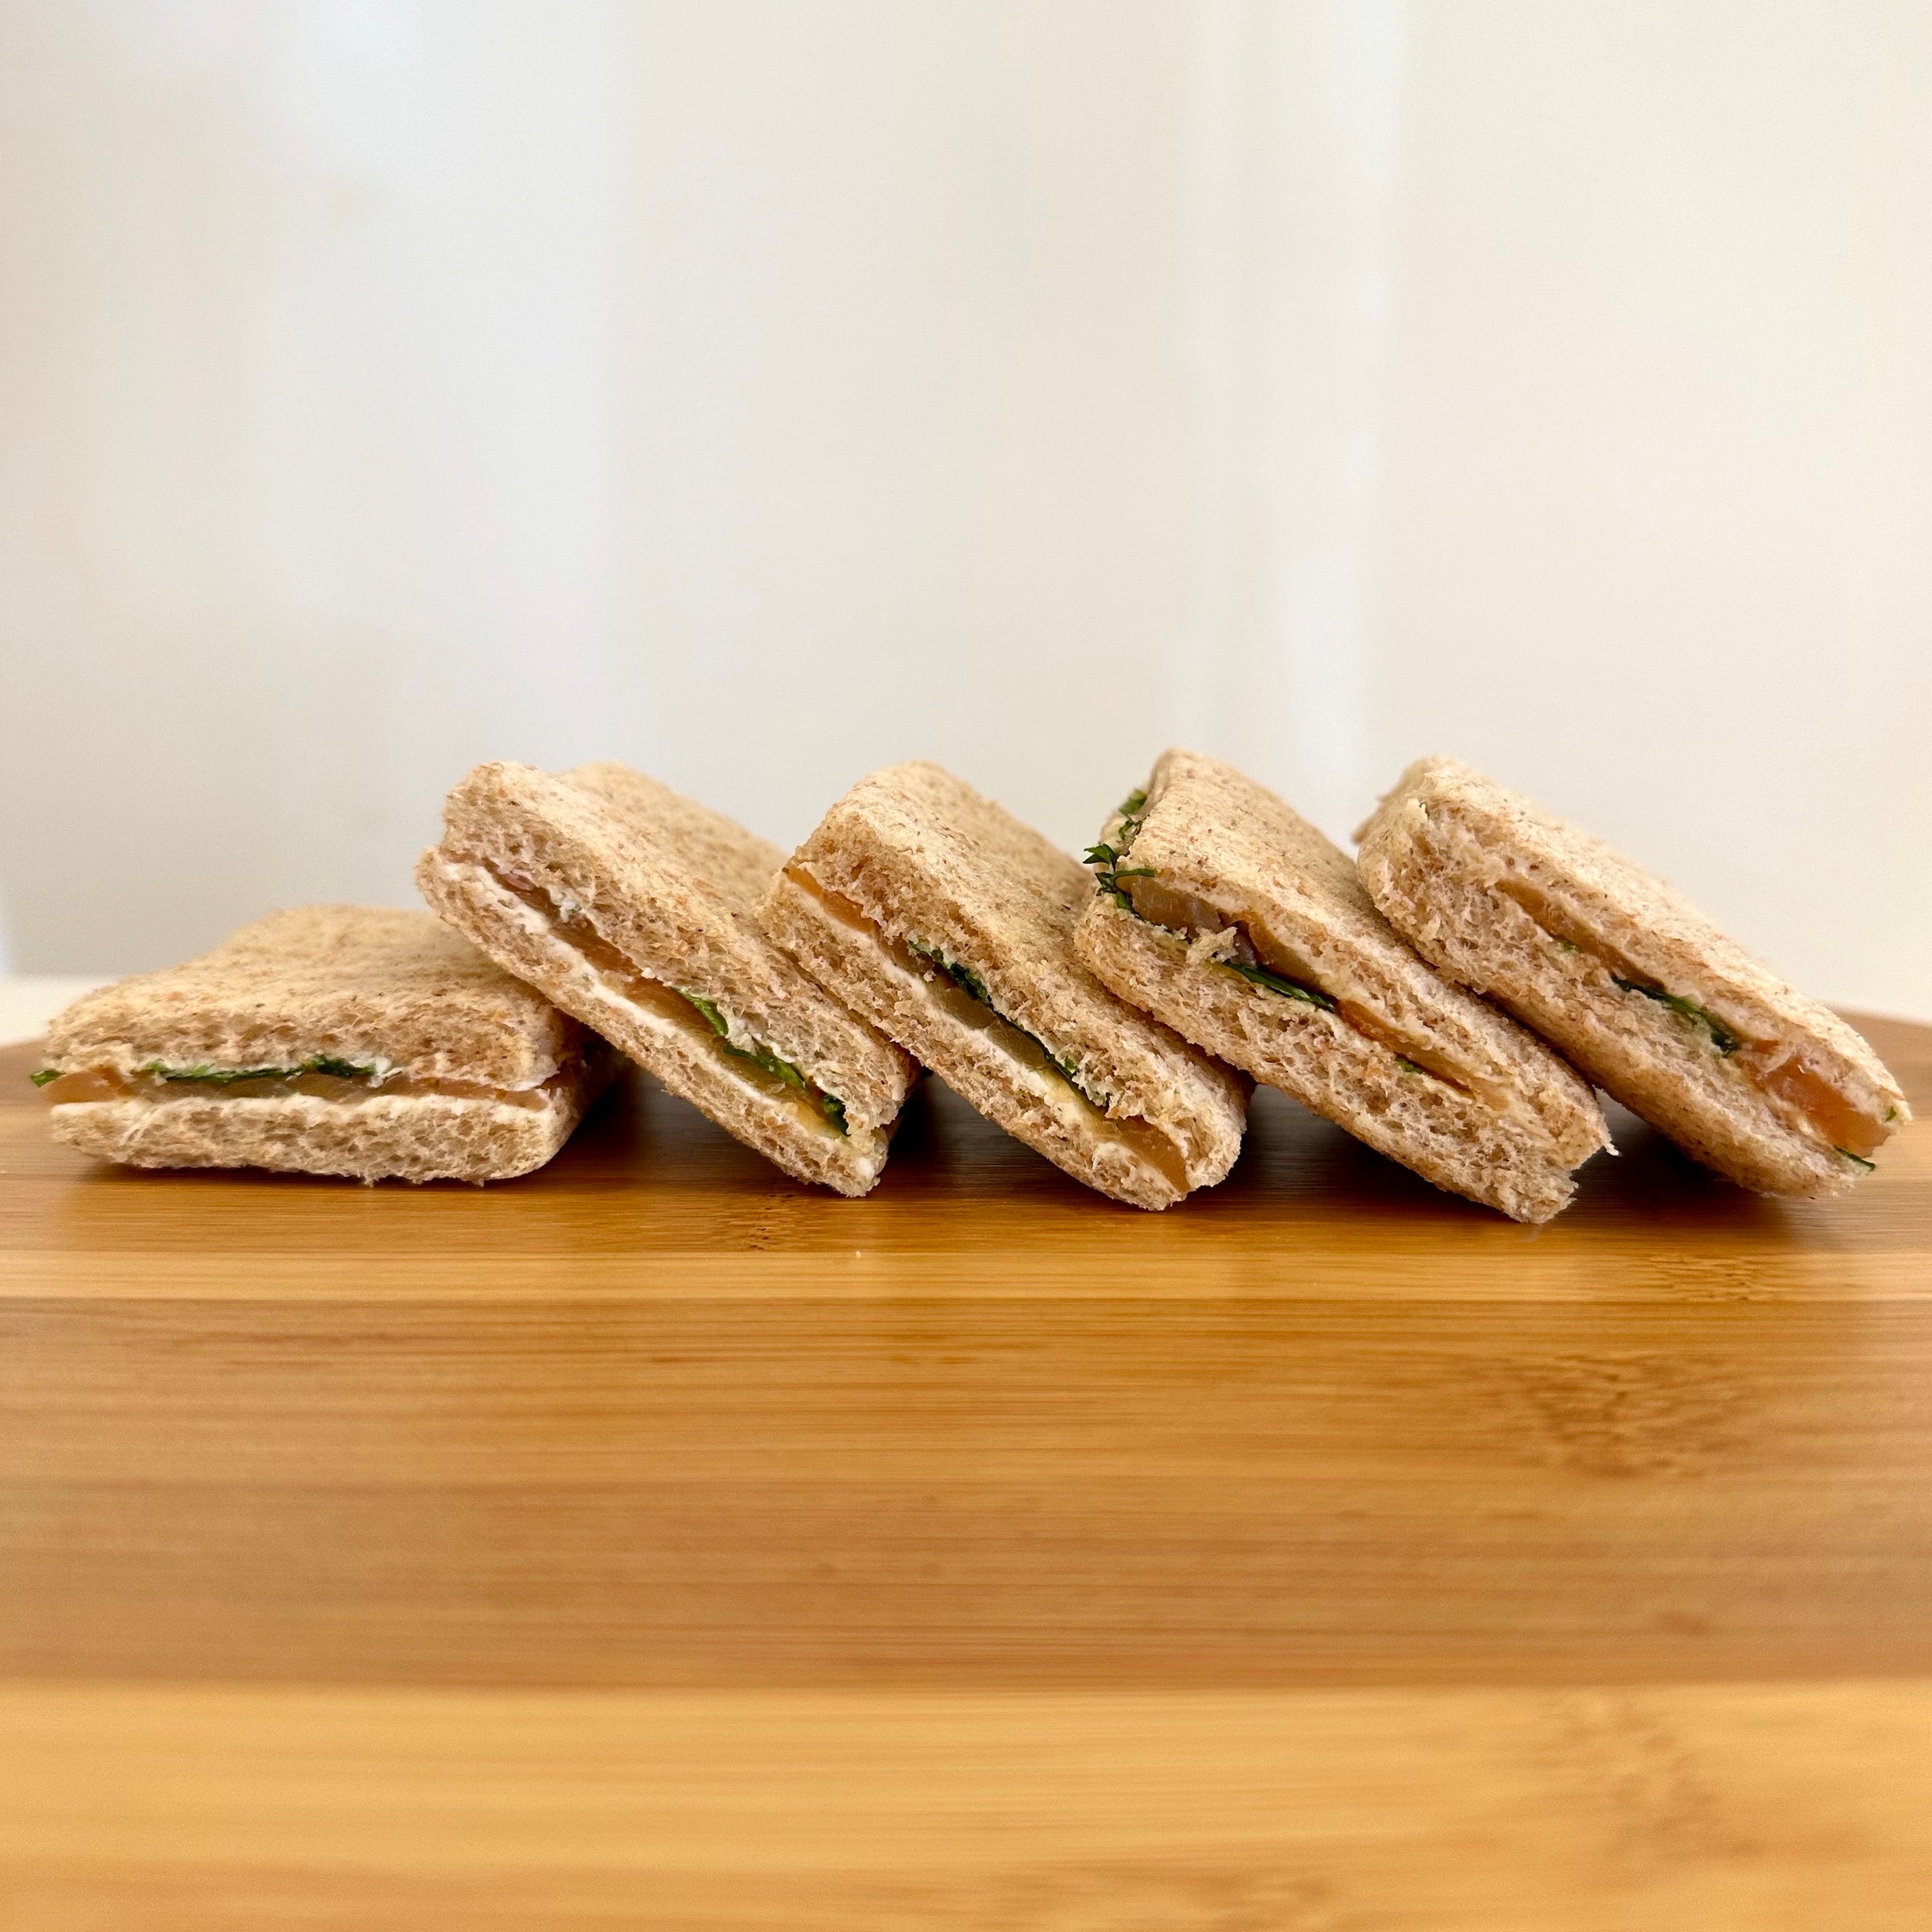 Bandeja de 8 mini sandwiches de pan de semillas con salmón rúcula y queso crema